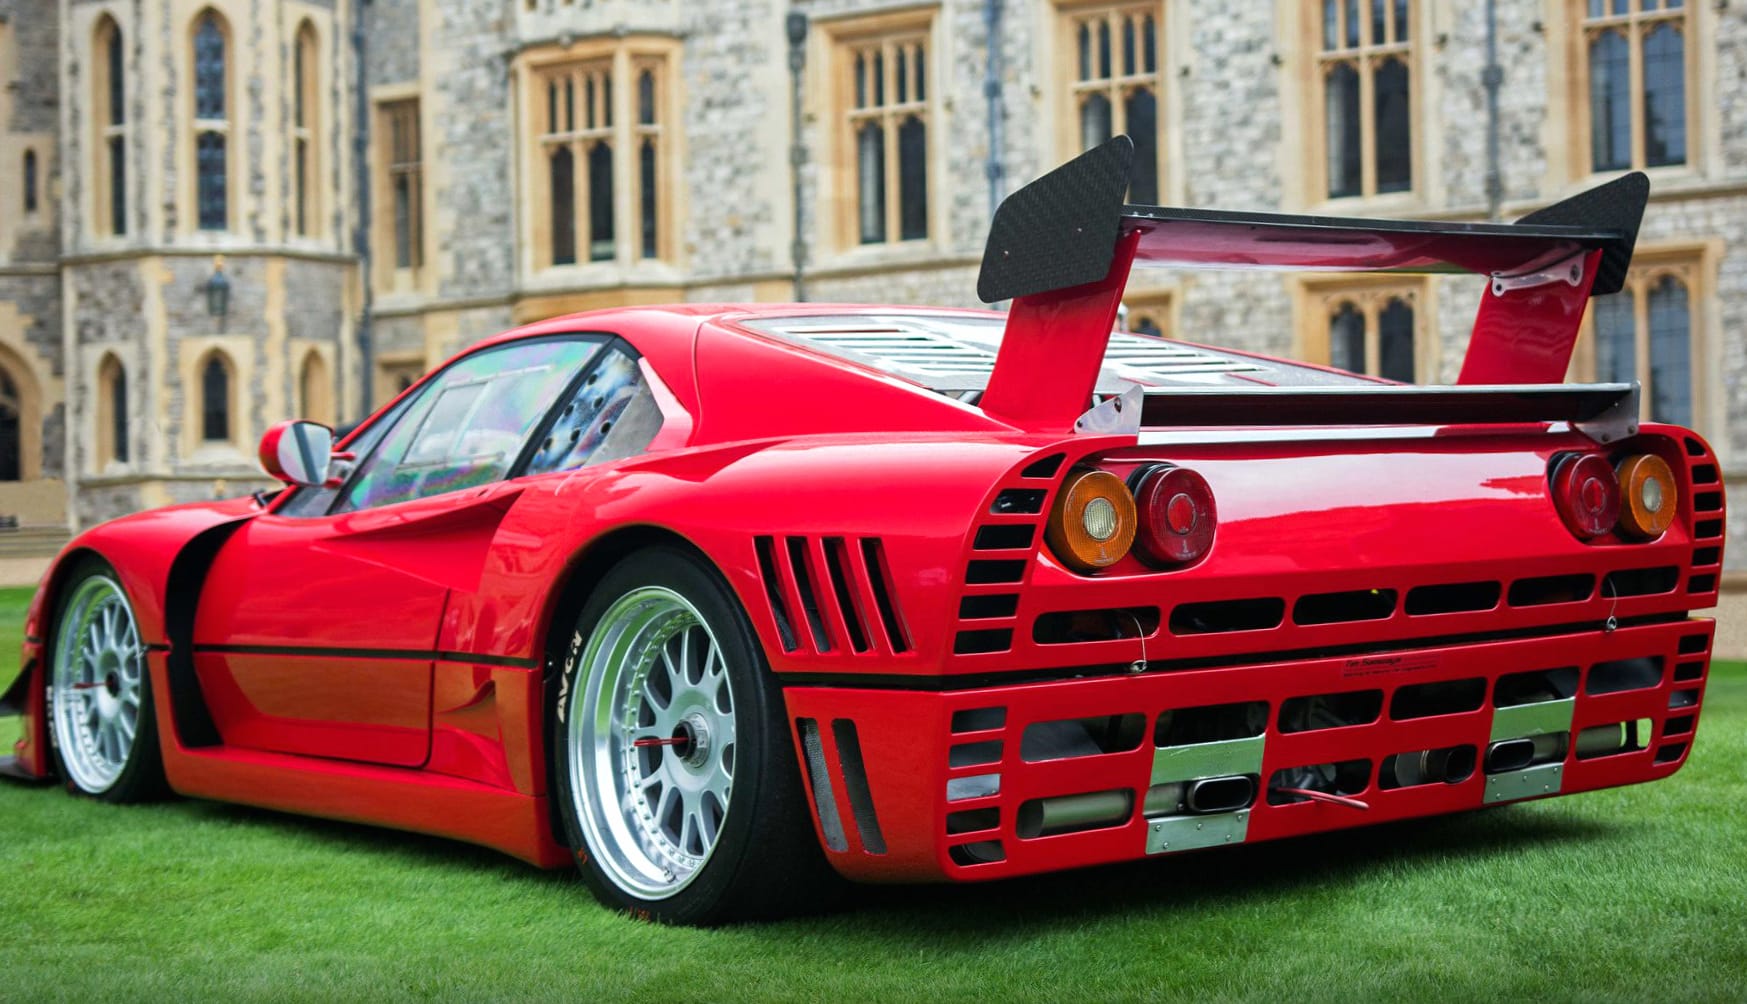 Ferrari GTO Evoluzione at 1152 x 864 size wallpapers HD quality